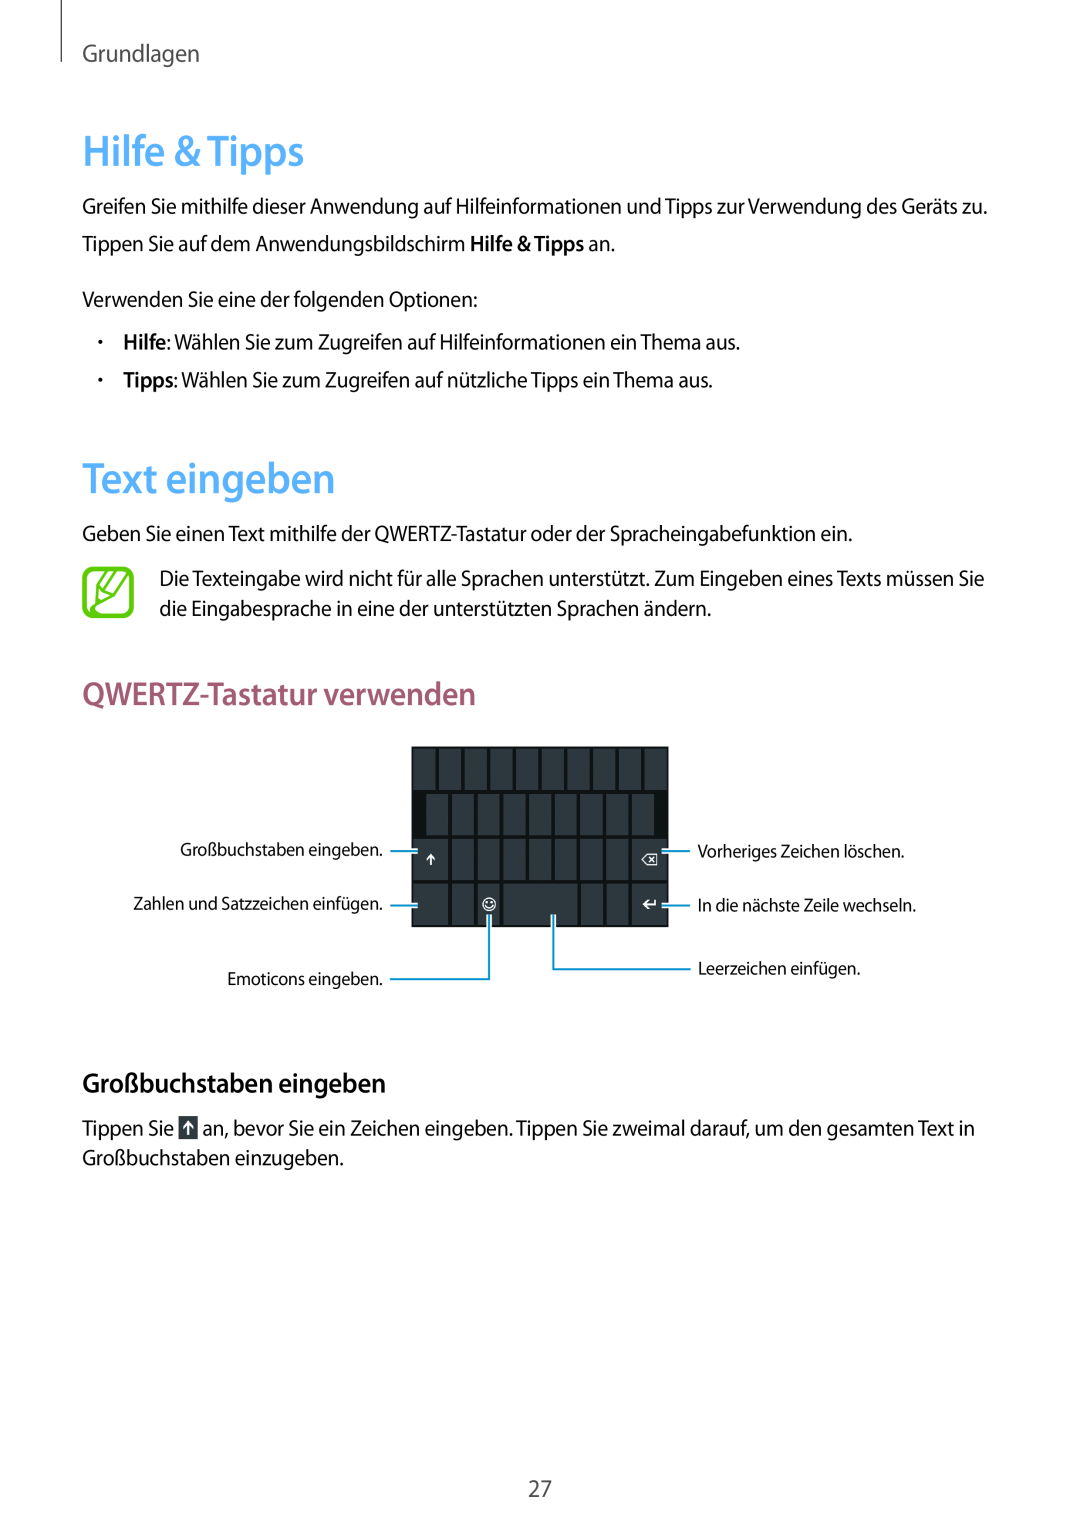 Samsung GT-I8750ALADBT manual Hilfe & Tipps, Text eingeben, QWERTZ-Tastatur verwenden, Großbuchstaben eingeben, Grundlagen 